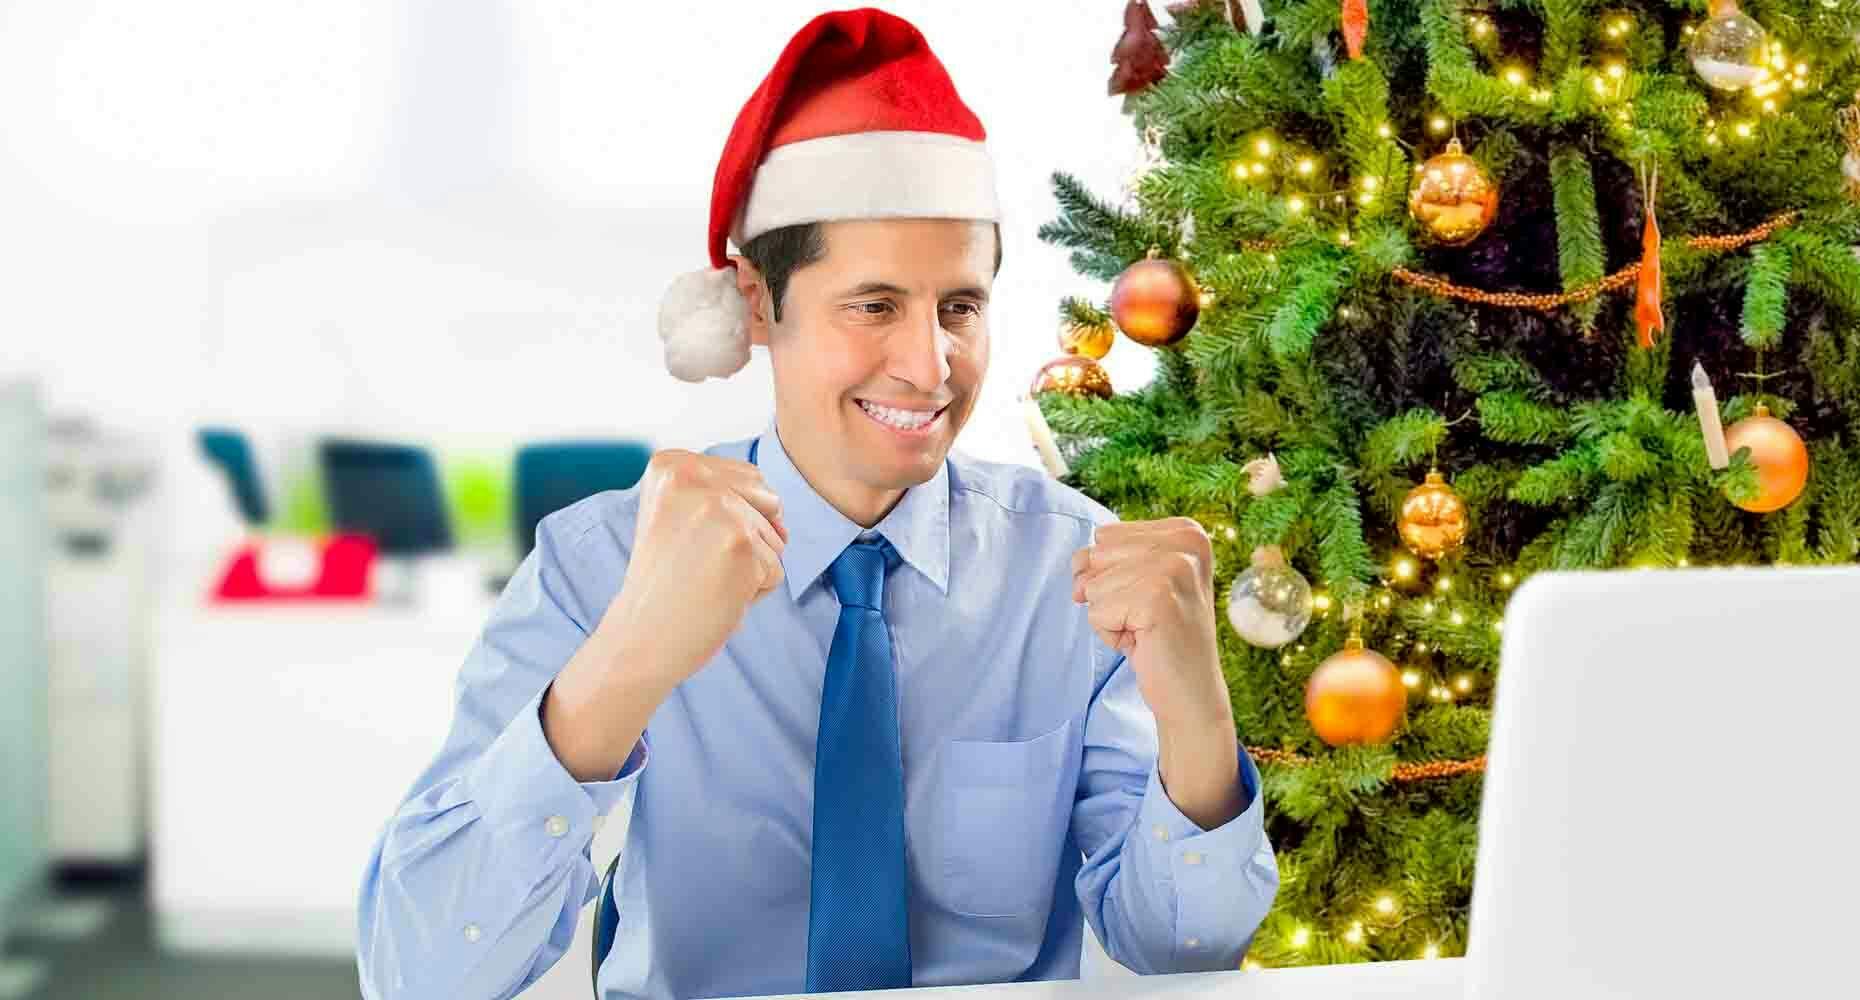 Happy sales person with a santa hat